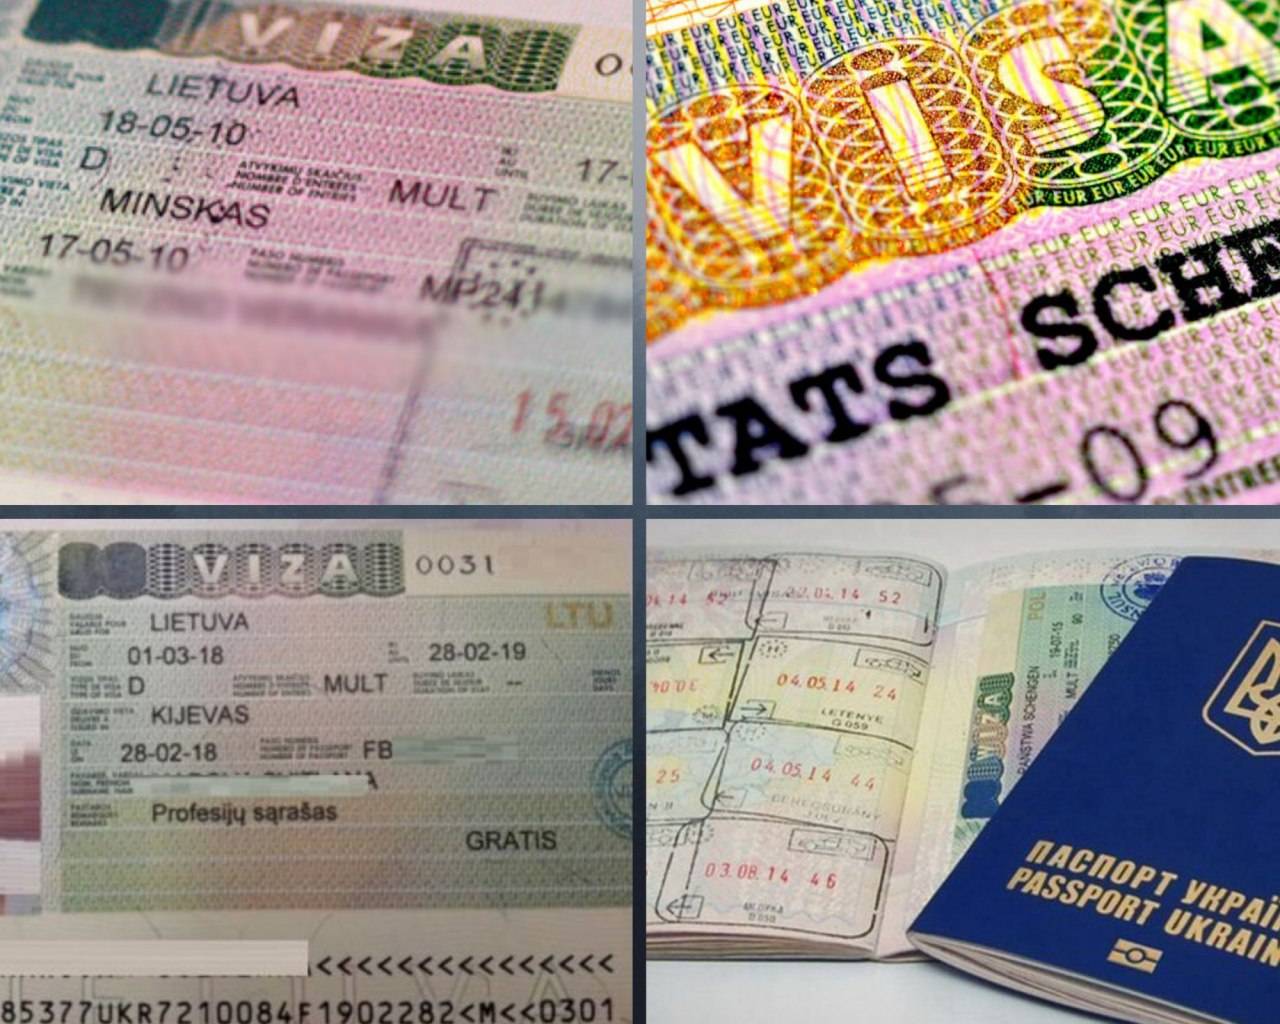 Национальная виза d в германию в 2021 году: как получить, документы, стоимость